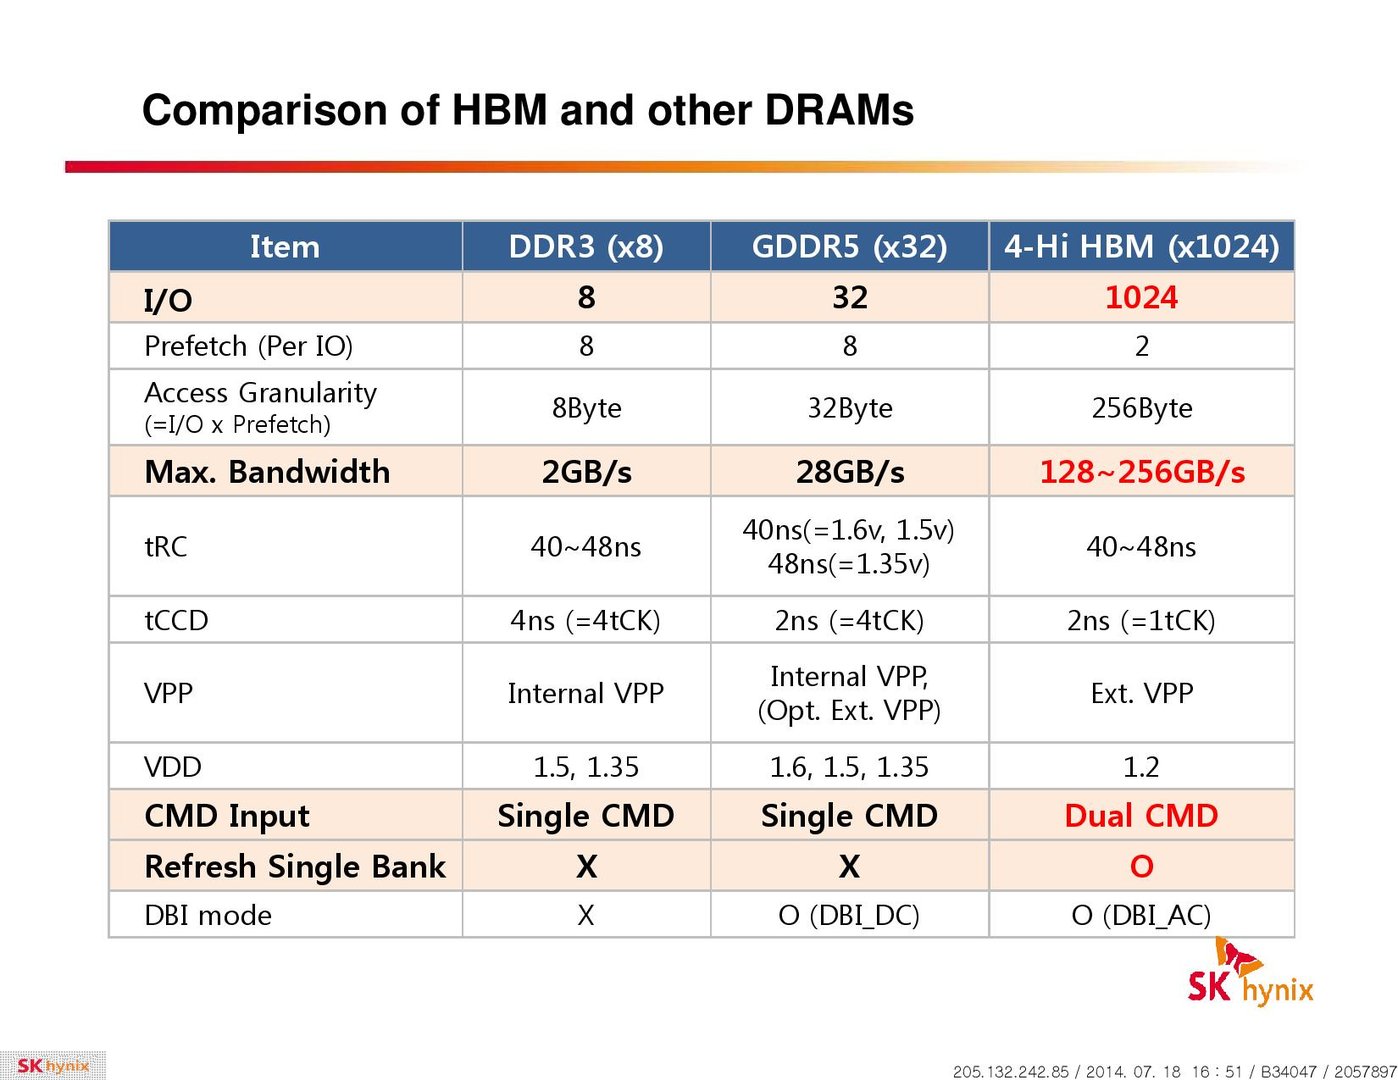 HBM im Vergleich zu DDR3 und GDDR5